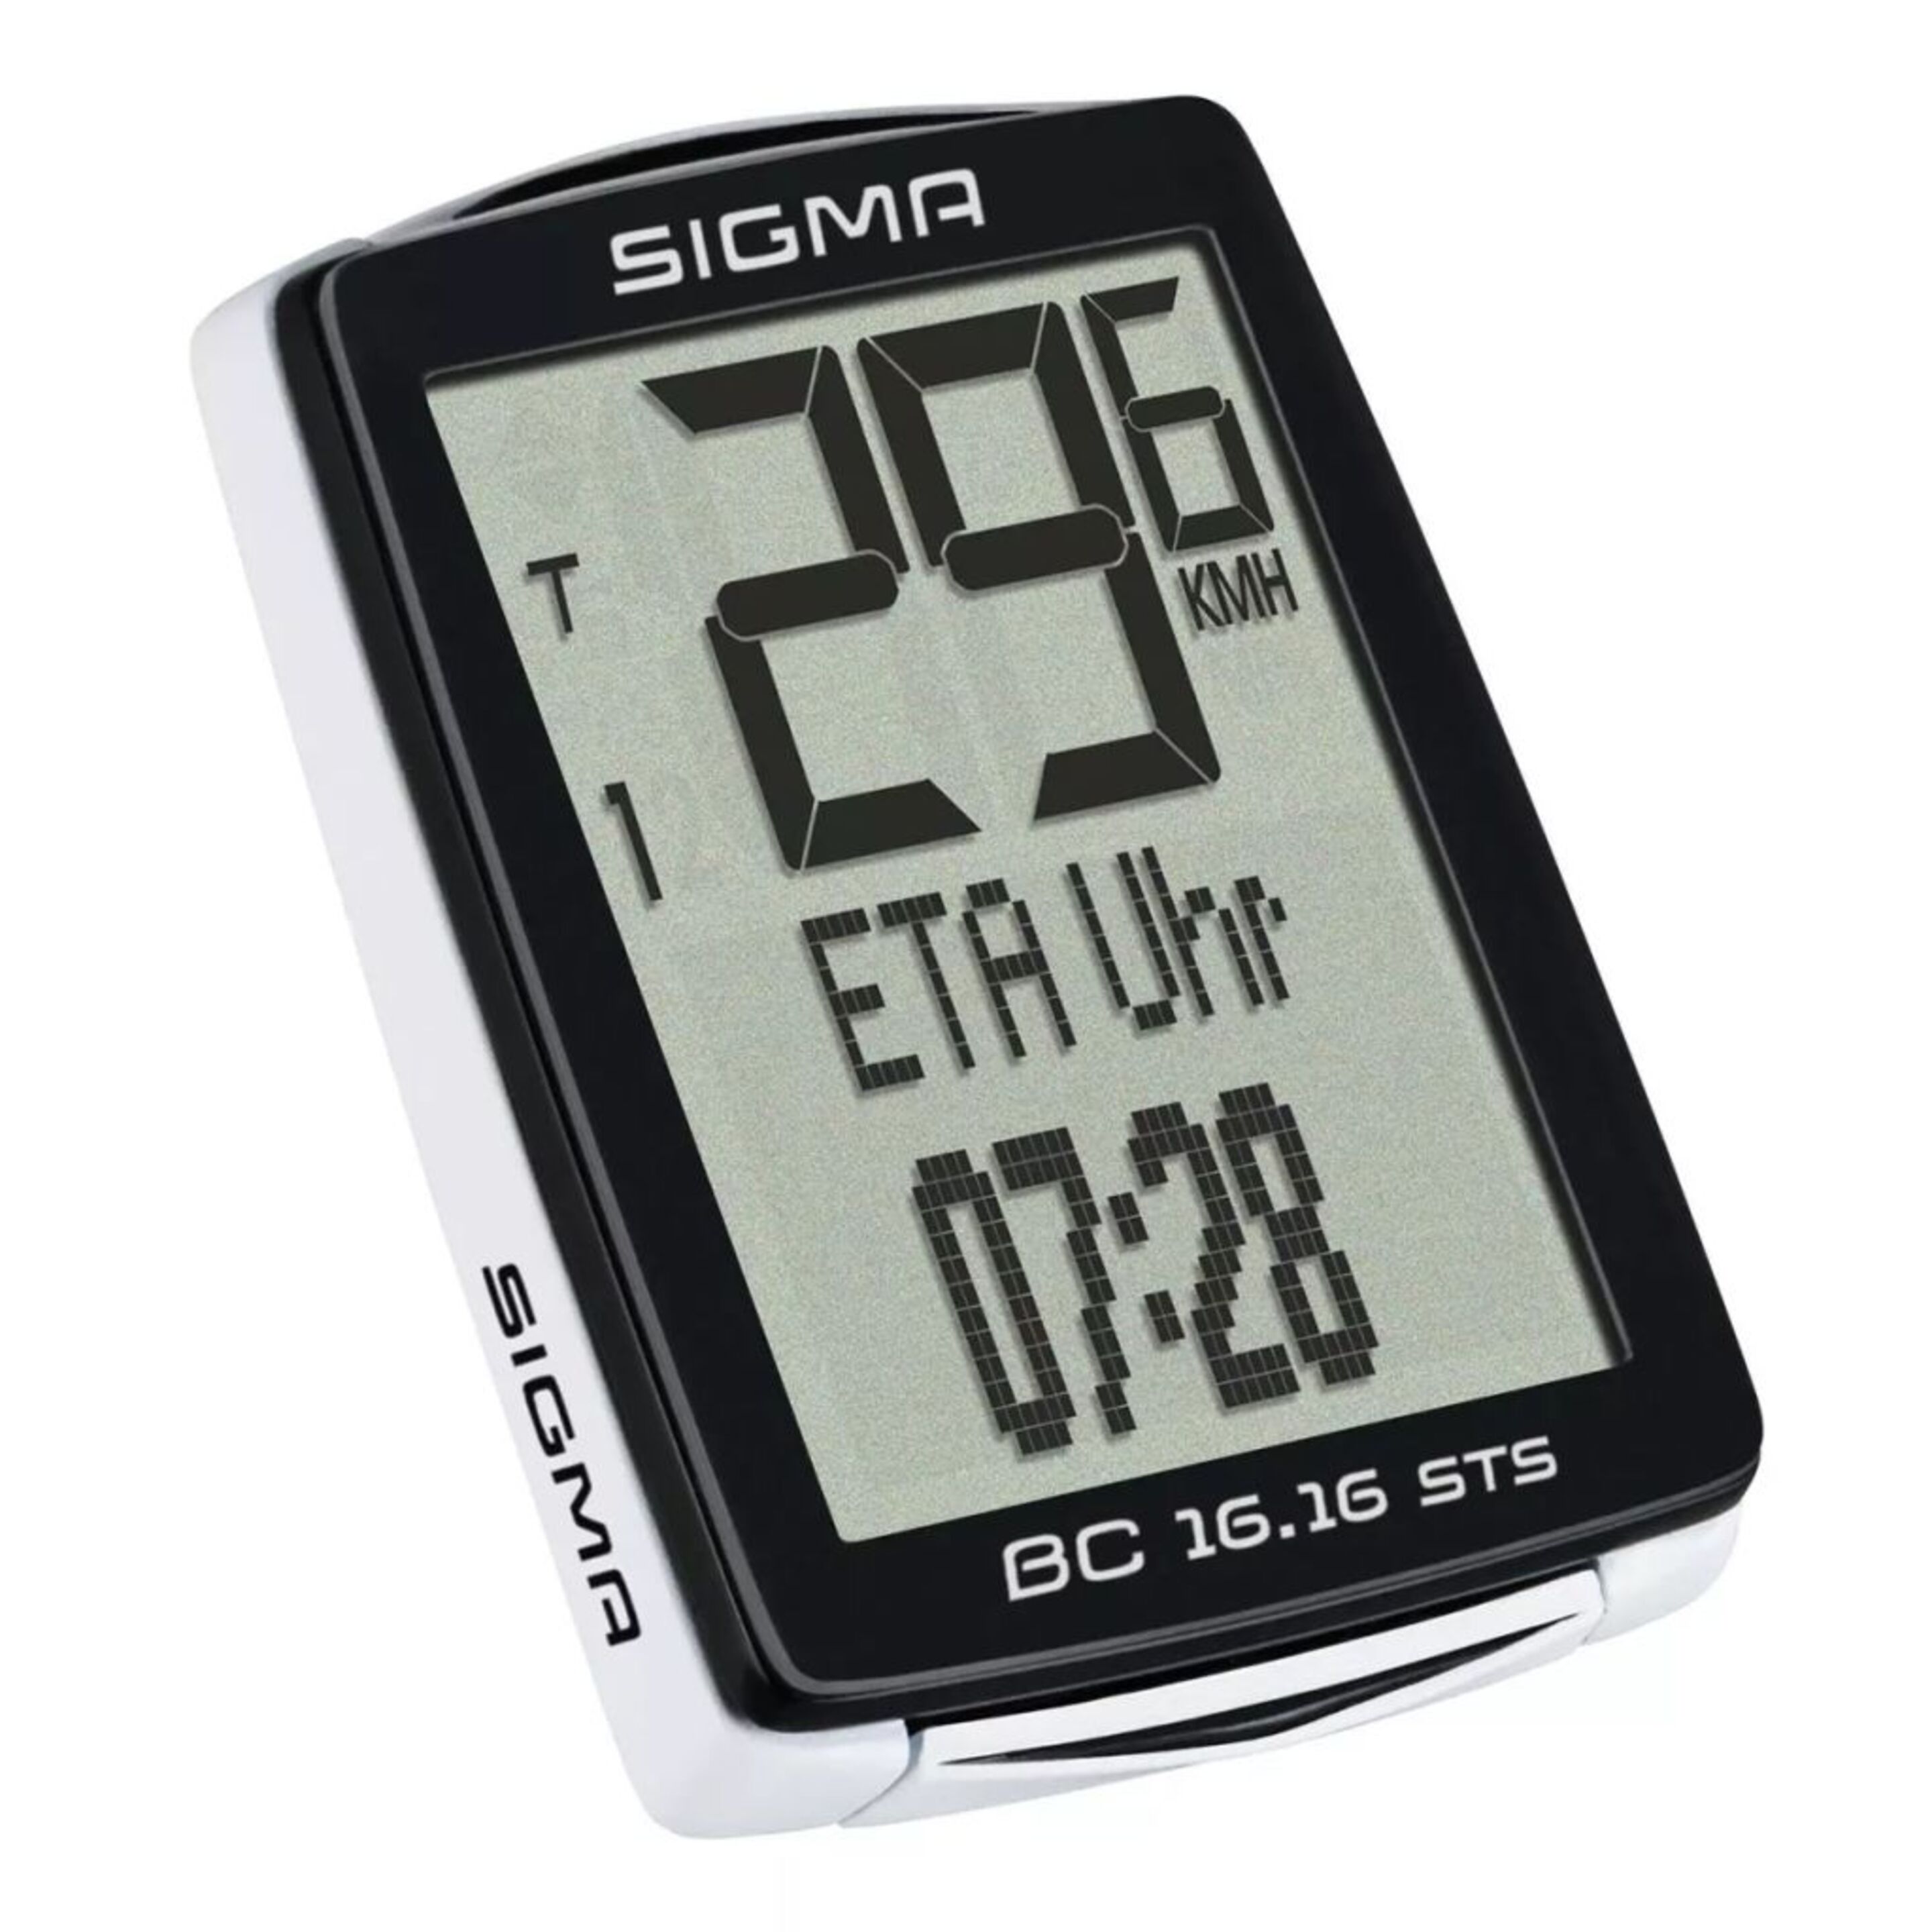 Cuentakilómetros Sigma Bc 16.16 Sts Cadencia - negro - 